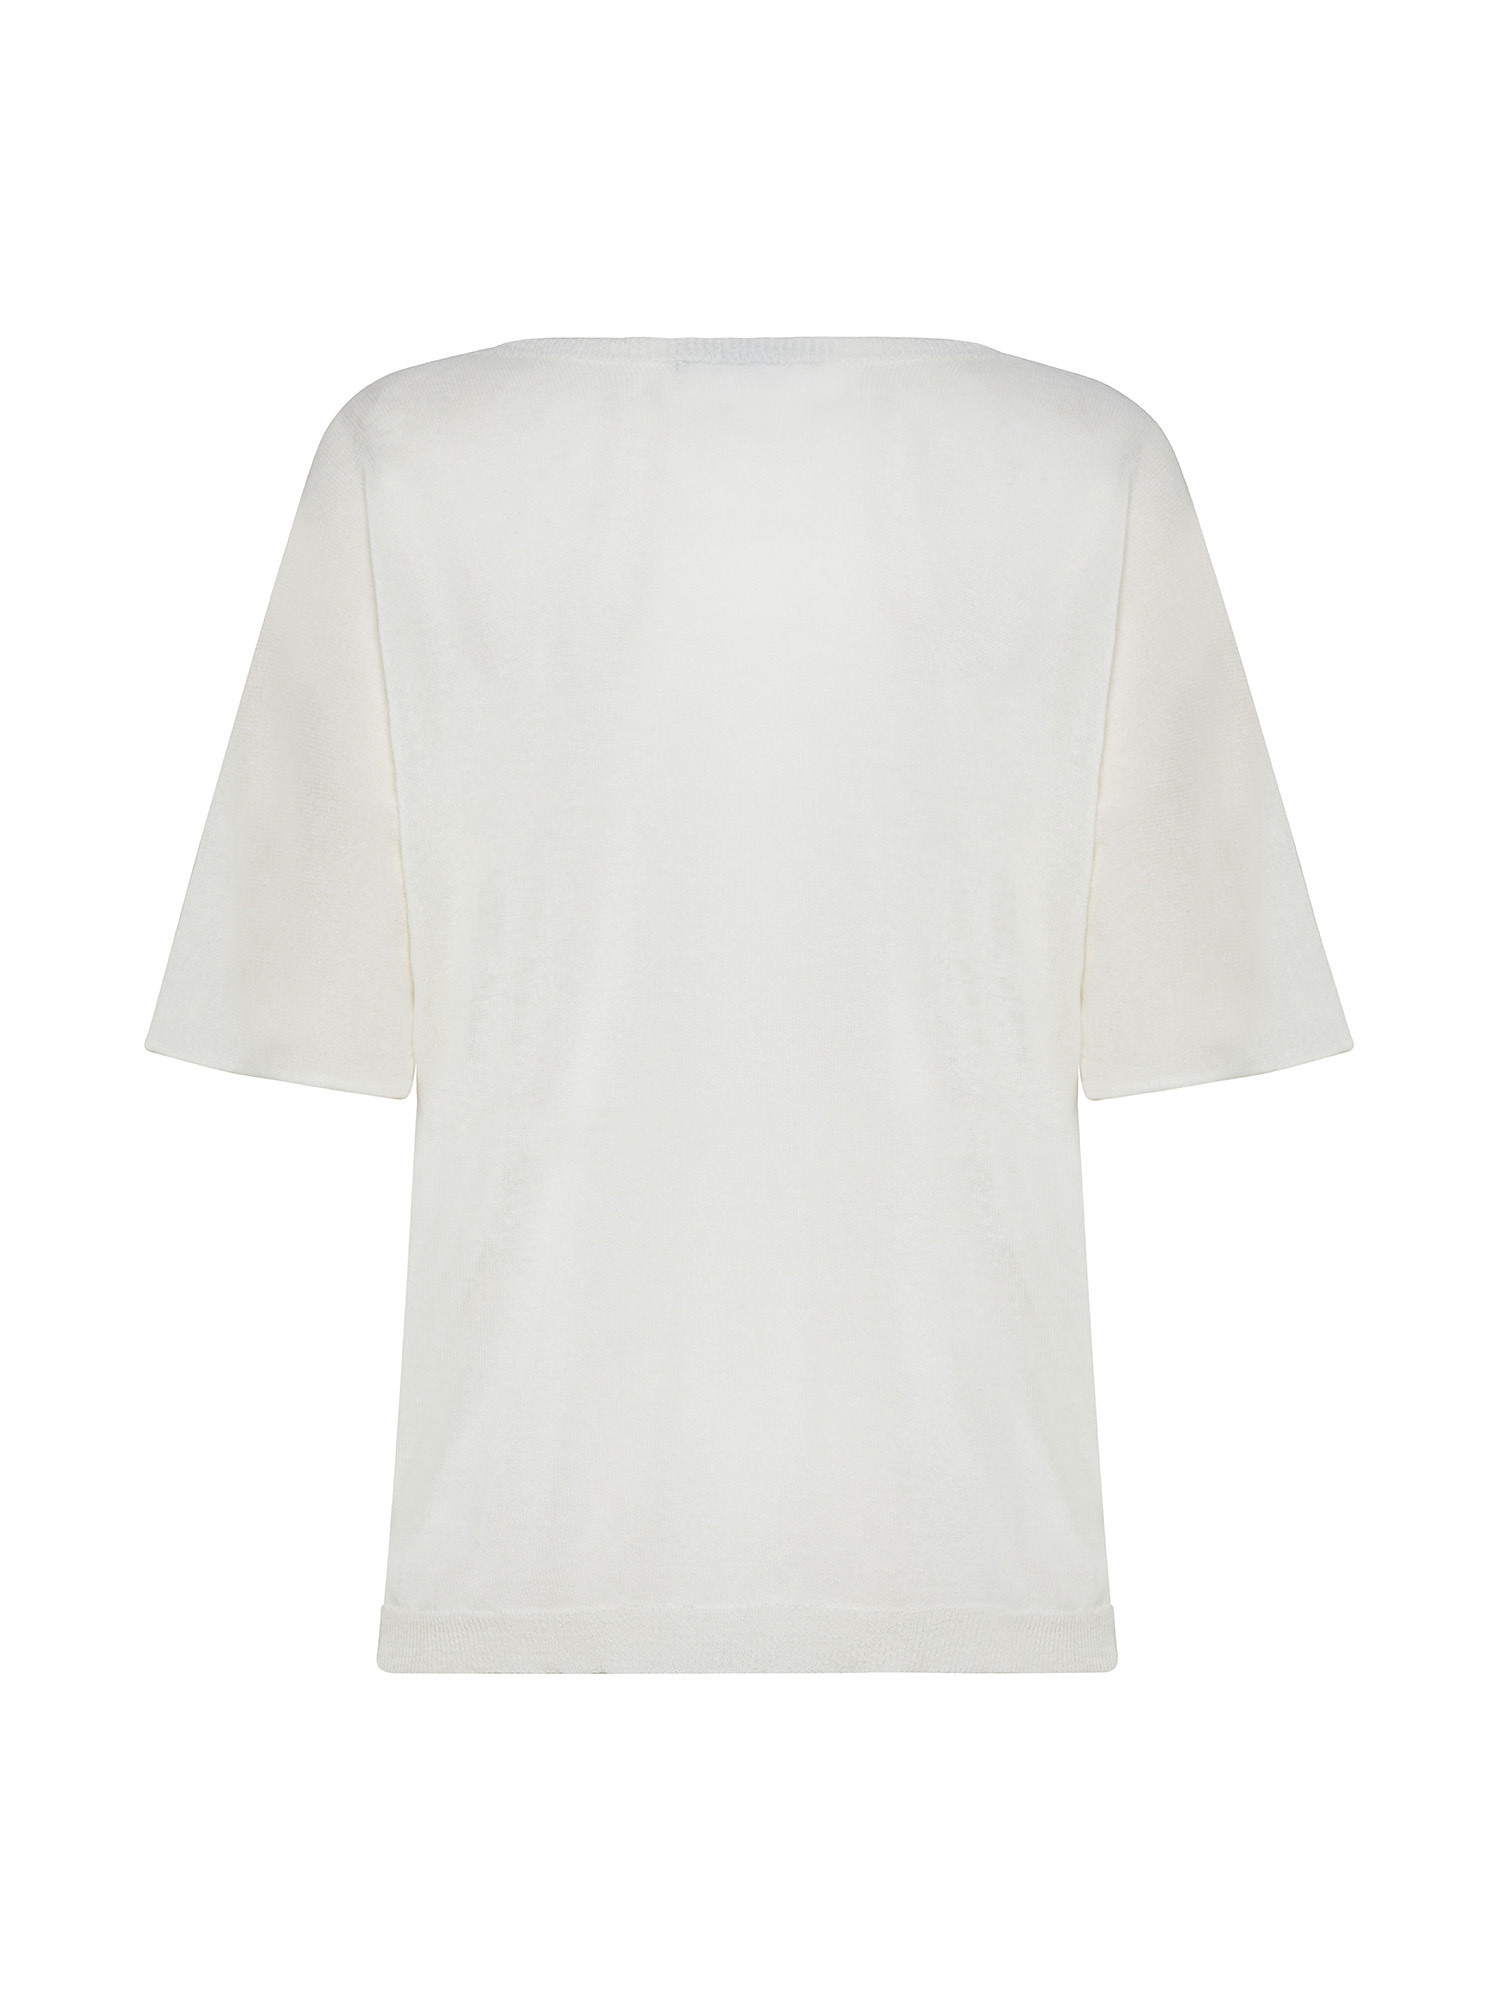 Kimono sleeve shirt, White, large image number 1